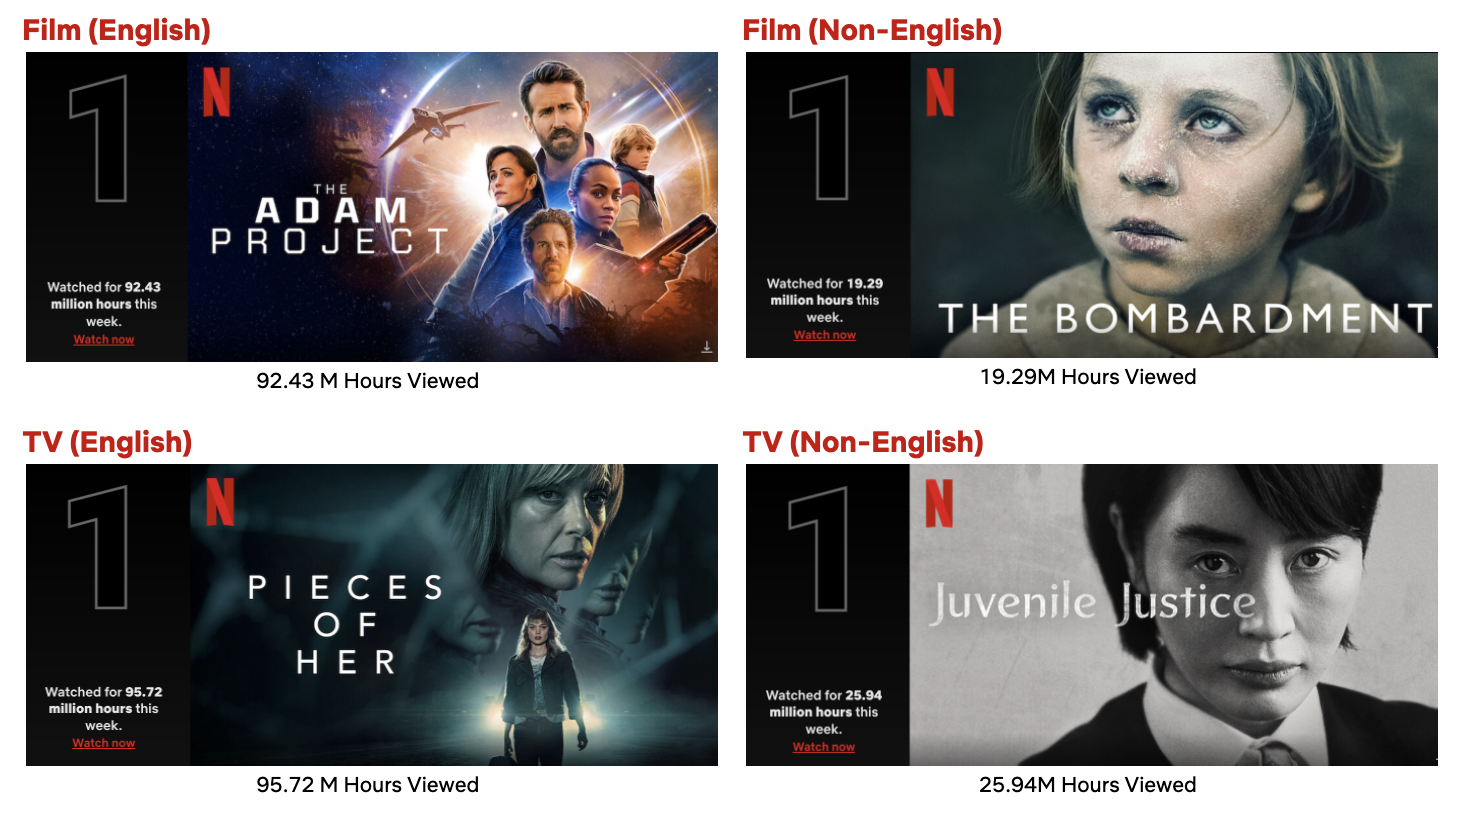 Netflix: melhores estreias da semana entre os dias 26 de março de